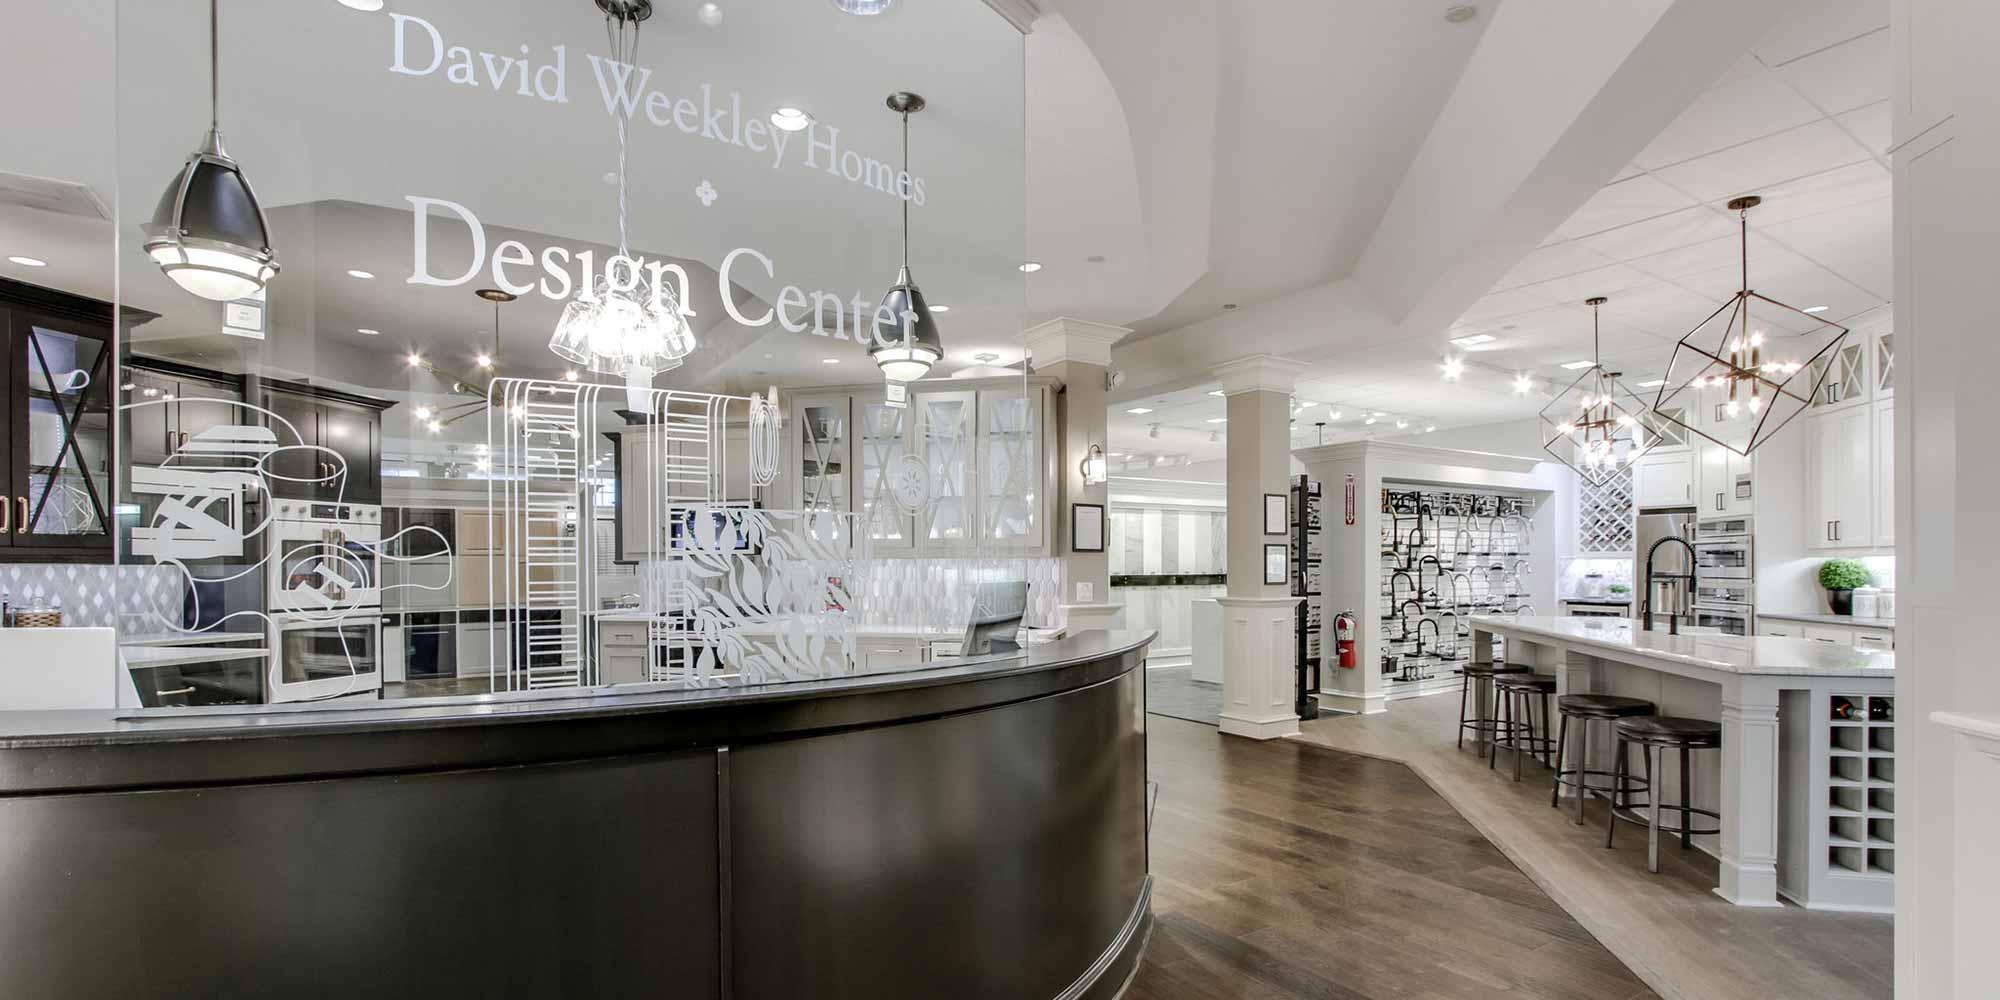 David Weekley's Design Center